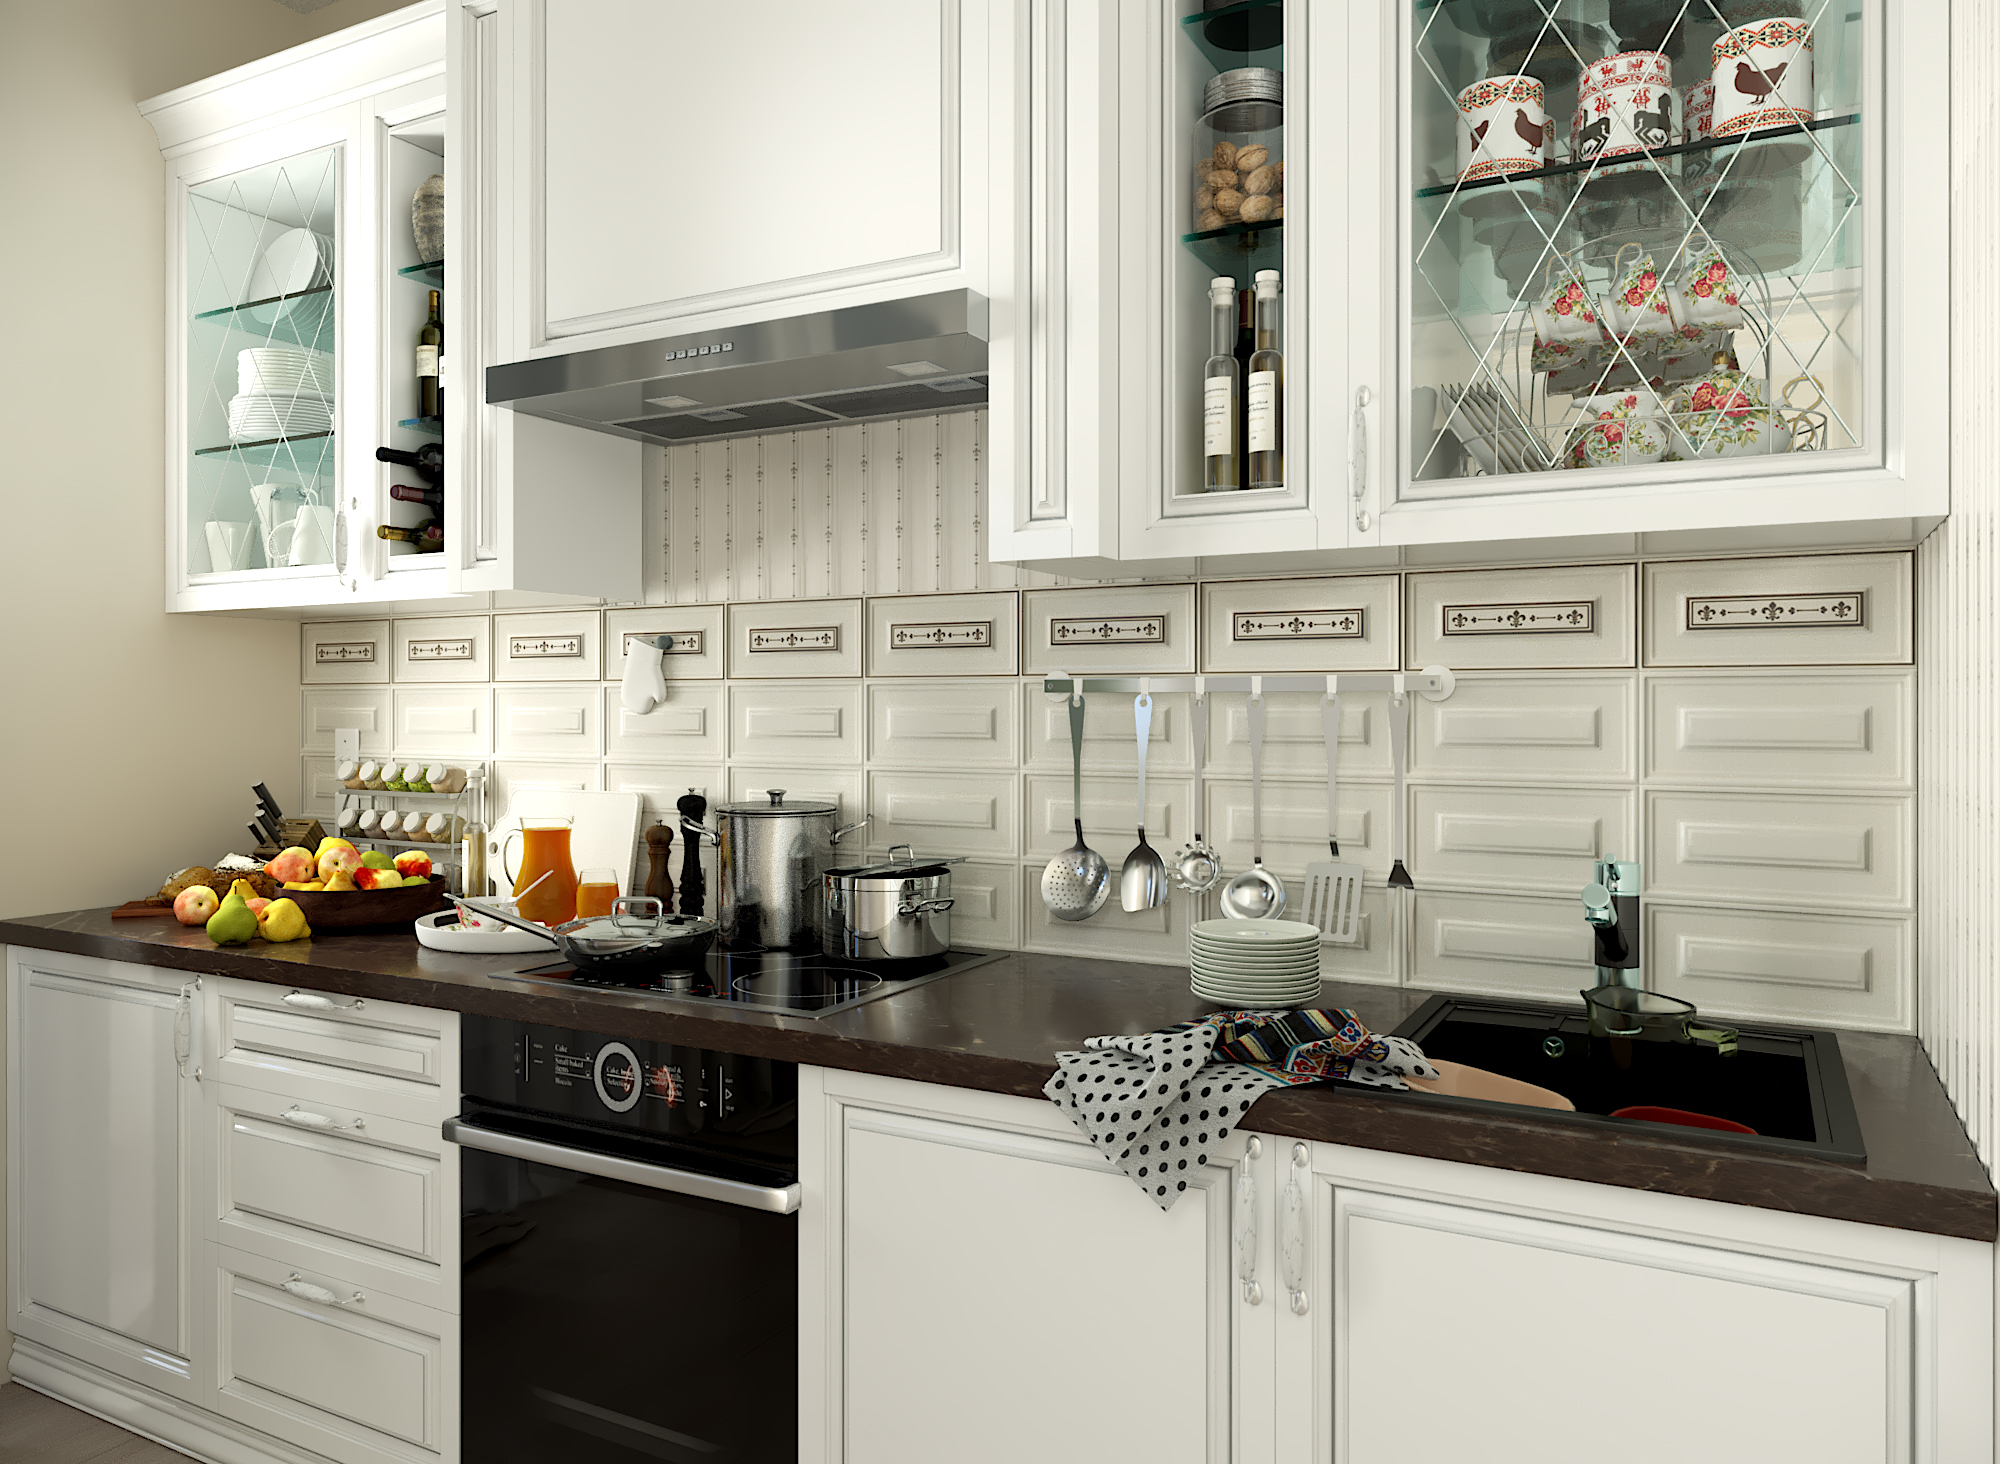 Visualizzazione 3D della cucina in 3d max corona render immagine